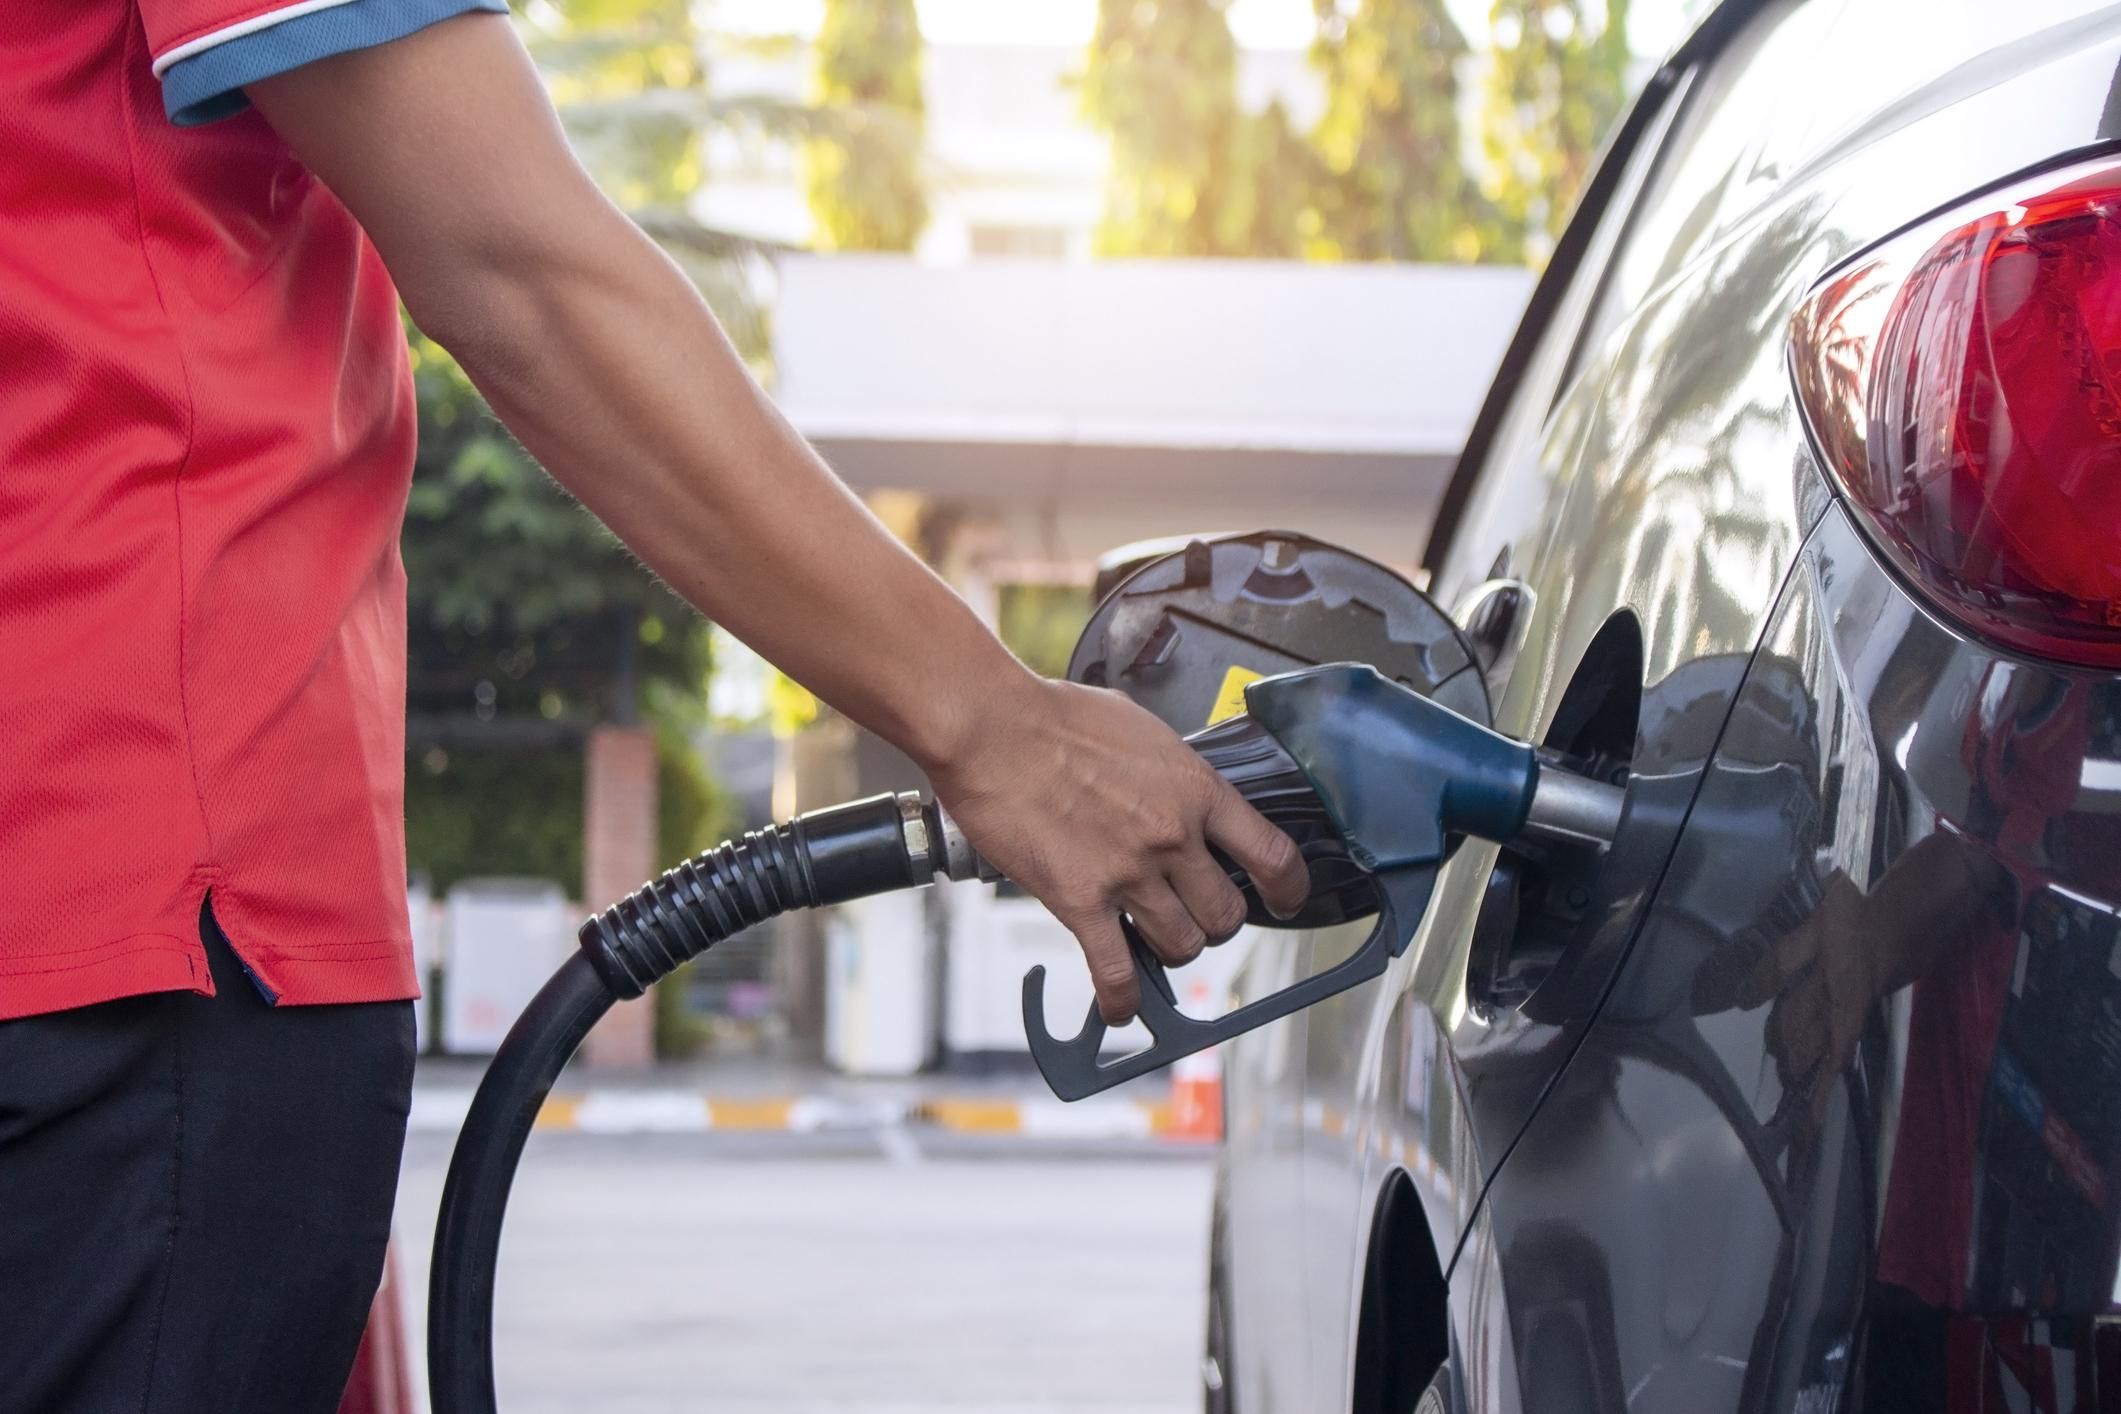 Árstopos benzint péntektől csak magyar rendszámú autókba lehet tankolni